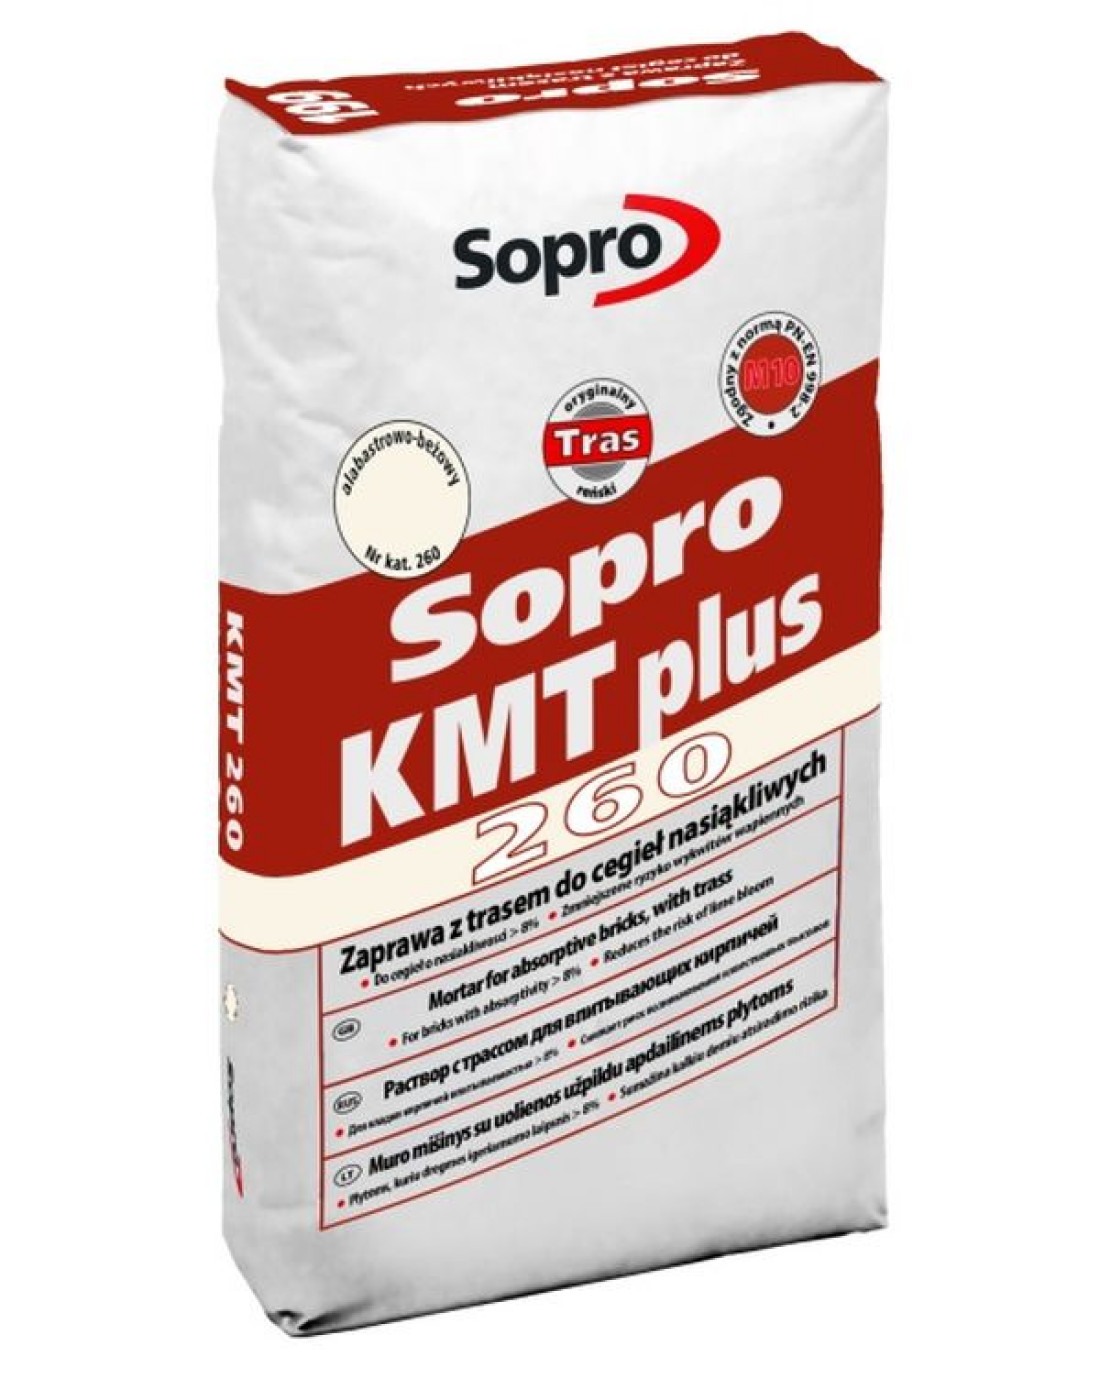 Ponadczasowa elegancja bieli, niezwykła trwałość klinkieru - Sopro wprowadza do oferty nowy kolor doskonale znanej zaprawy KMT Plus